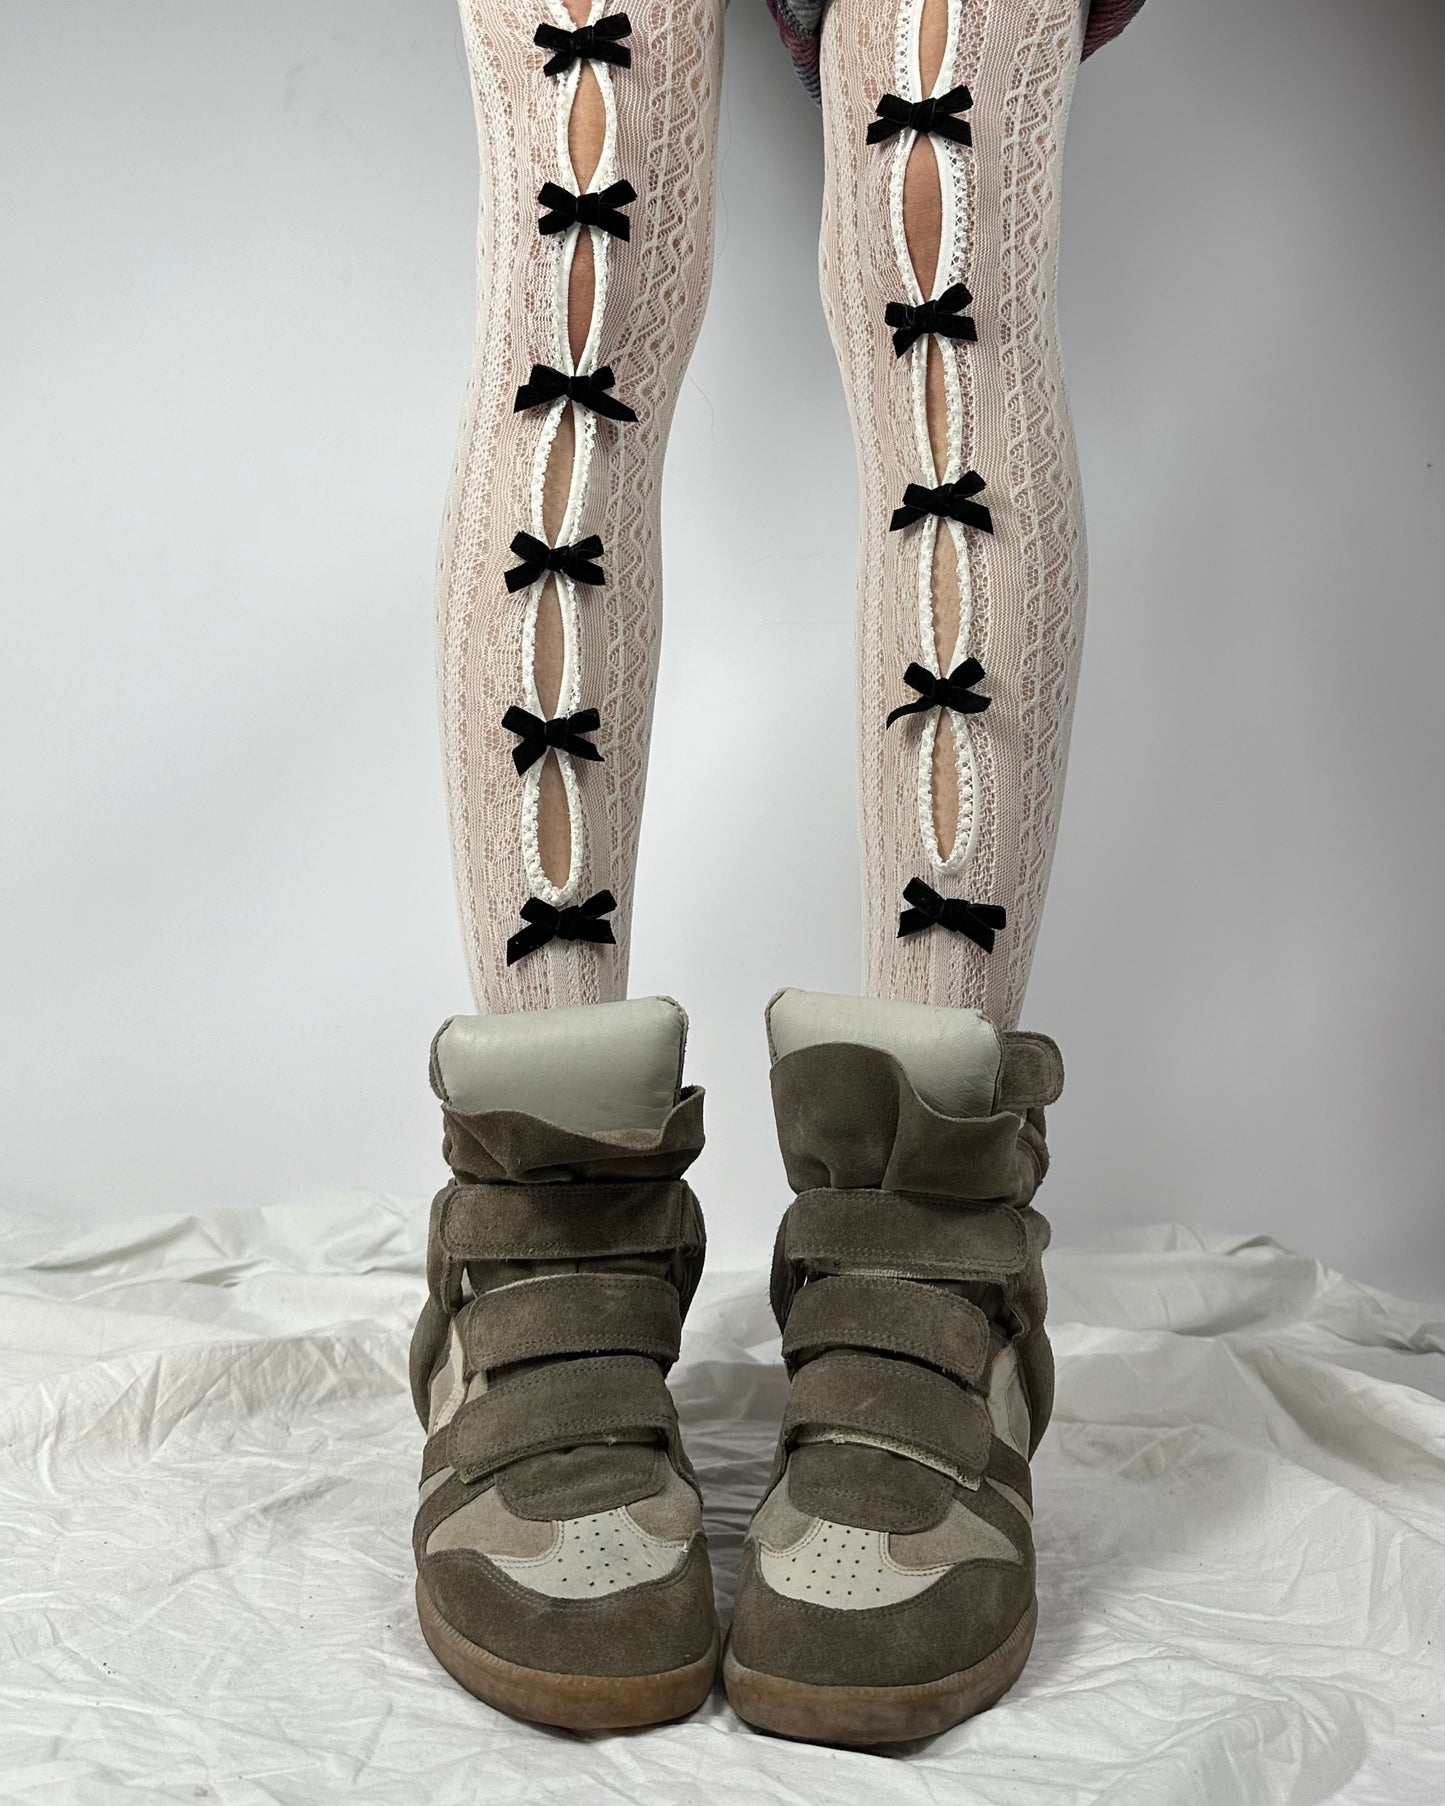 Isabel Marant Wedge Sneakers 40/41